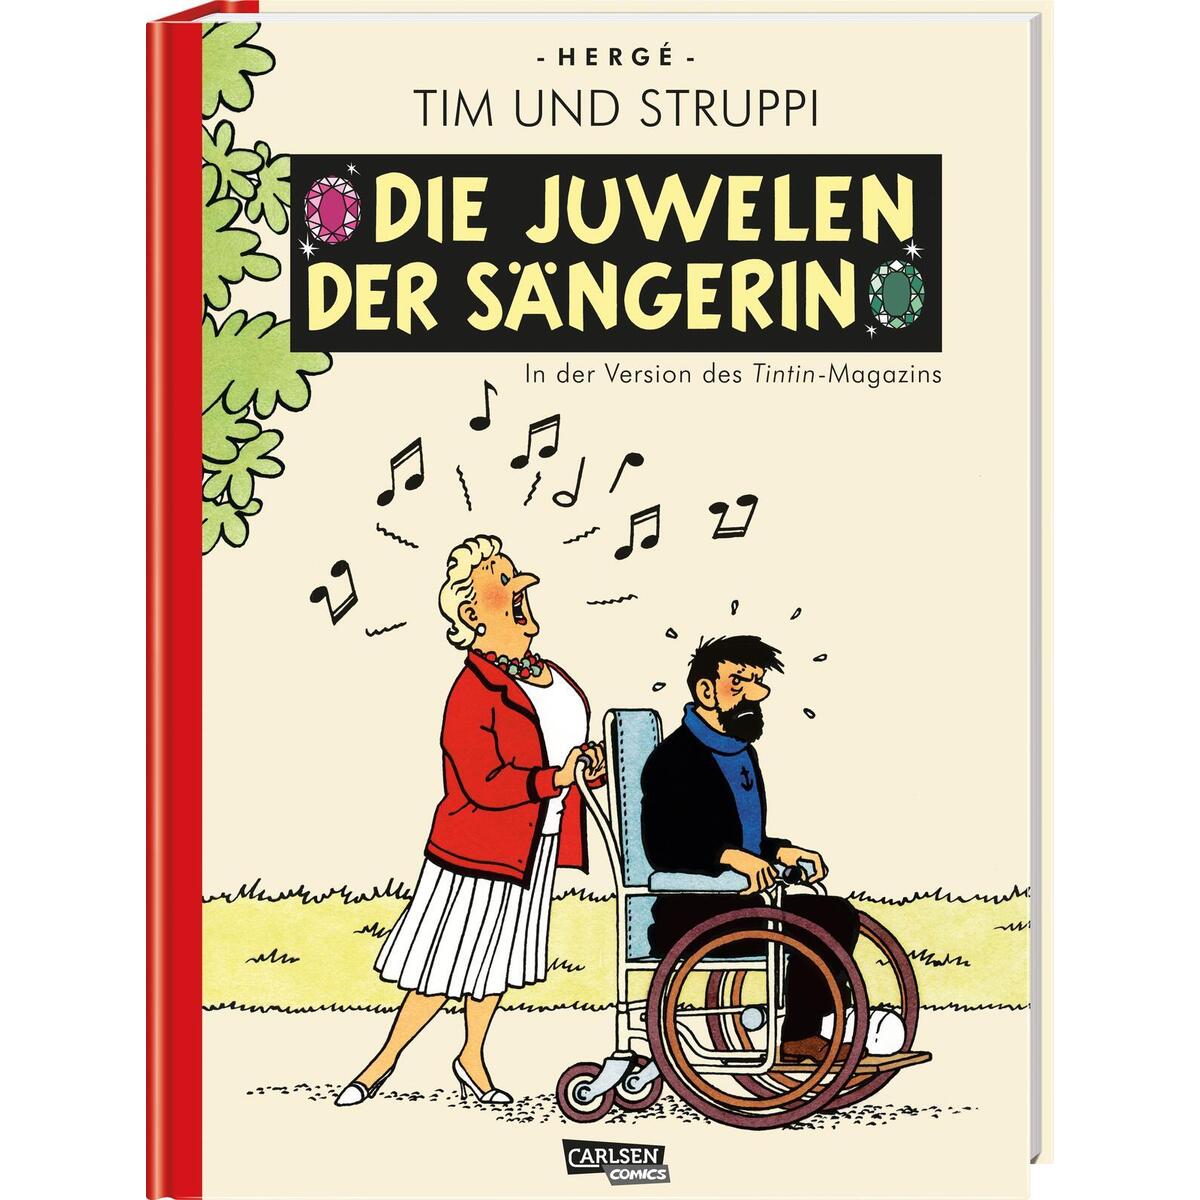 Tim und Struppi: Sonderausgabe: Die Juwelen der Sängerin von Carlsen Verlag GmbH